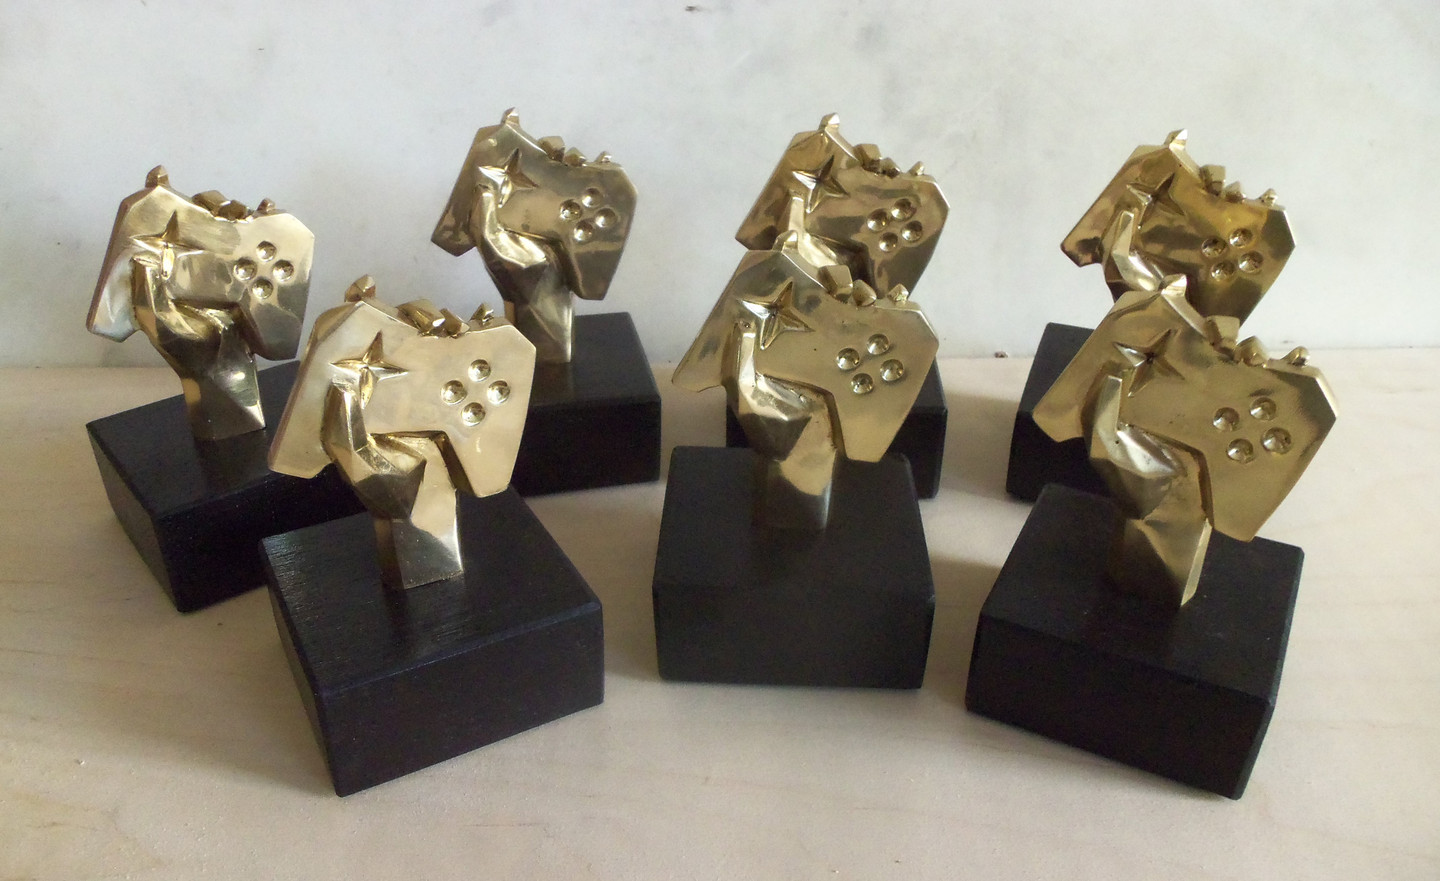 Lietuvos žaidimų kūrėjų asociacijos apdovanojimų nominacijų statulėlės, pagamintos pagal pateiktą modelį. Žalvaris, ąžuolas, h - 15 cm